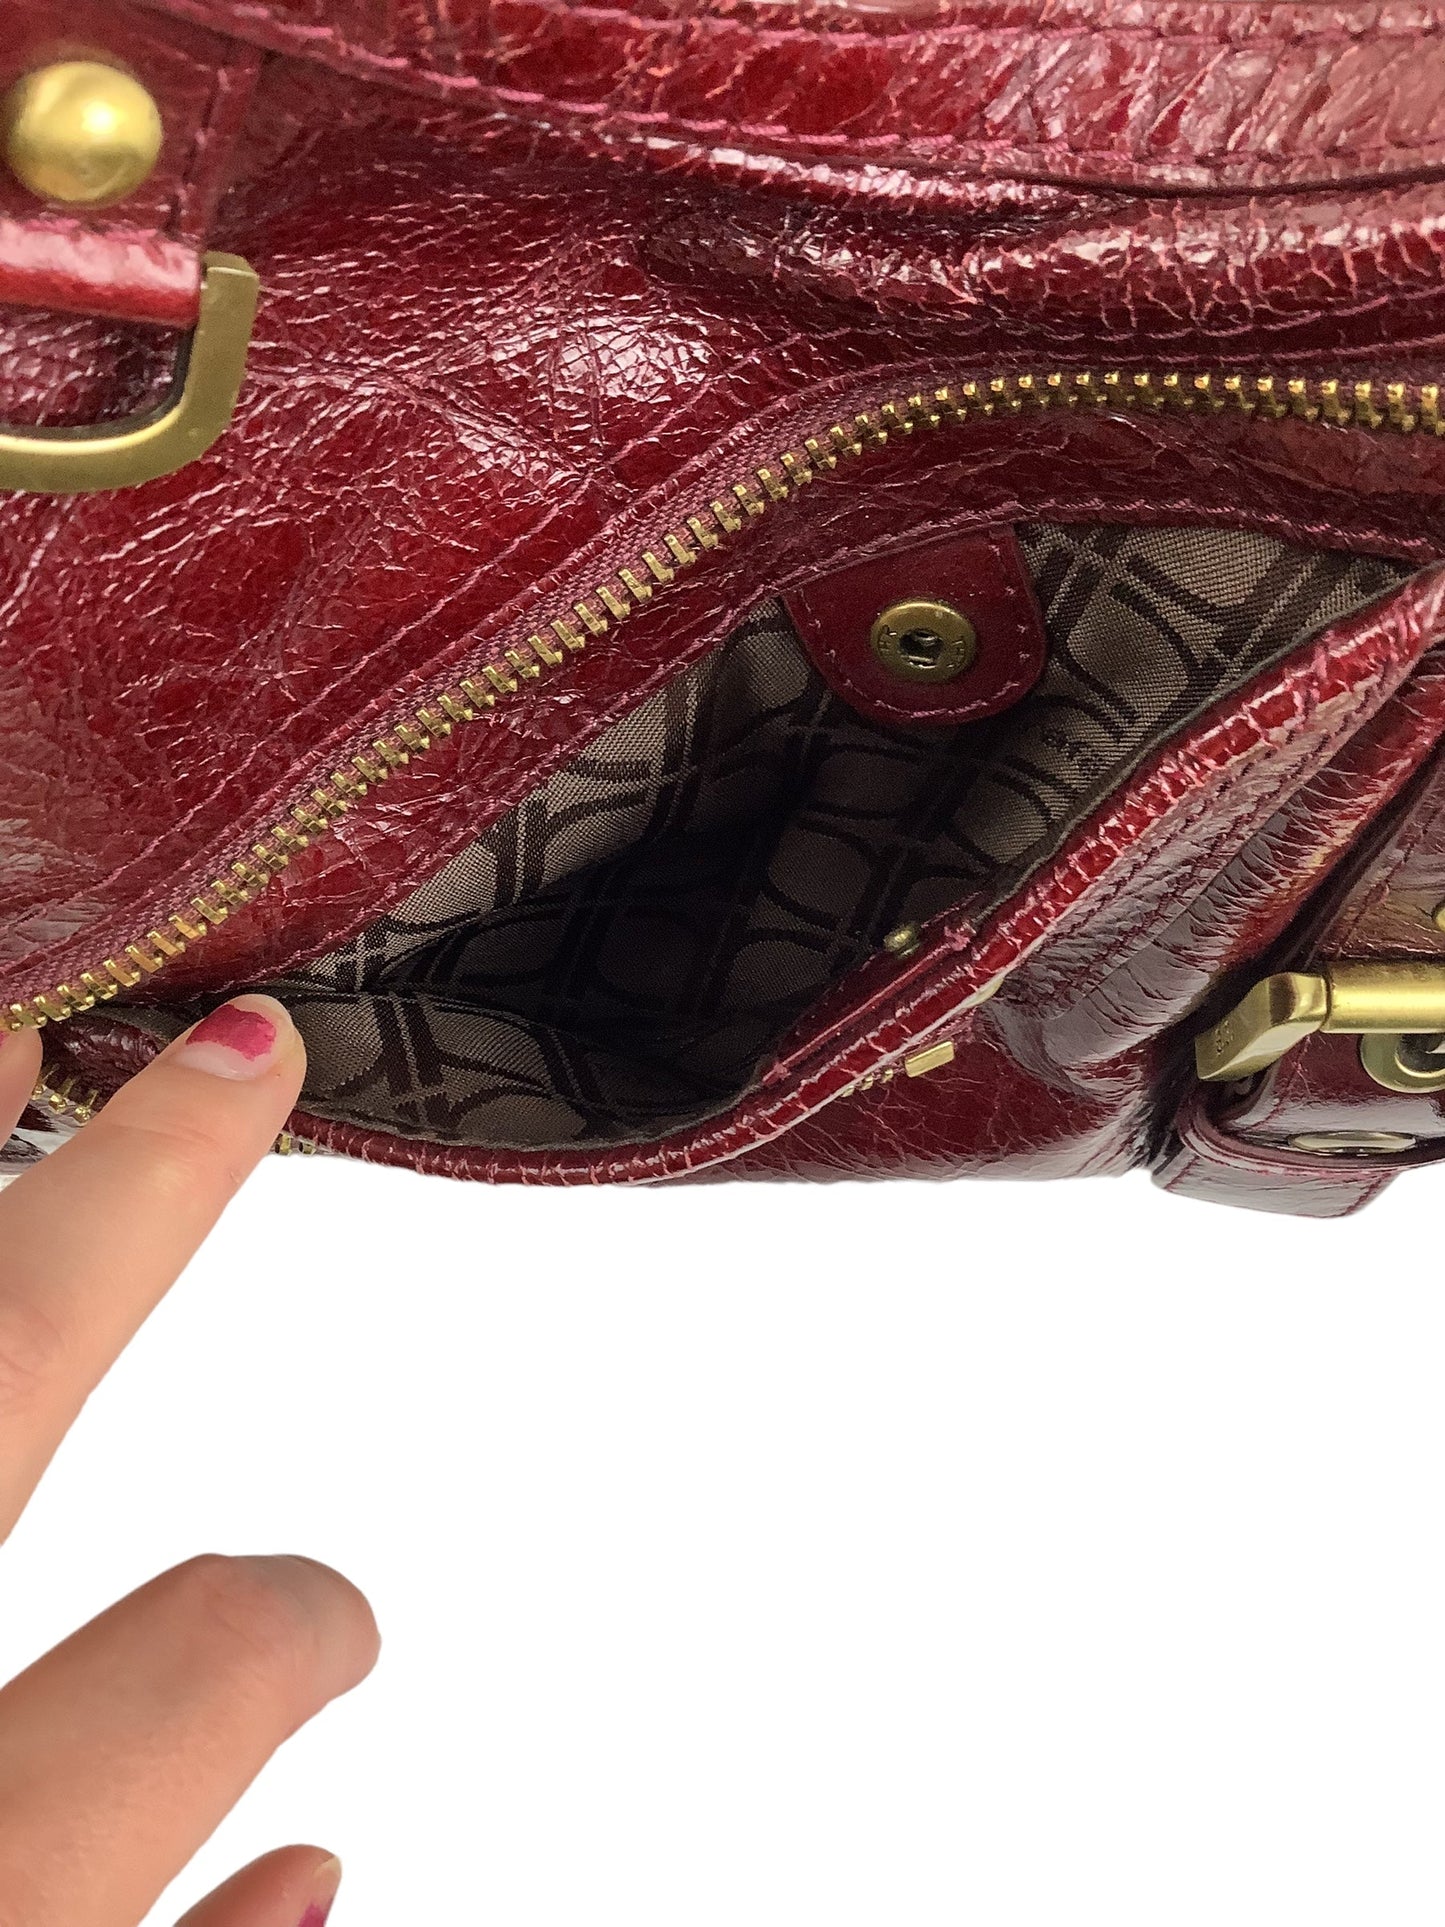 Handbag Designer By Cma  Size: Medium